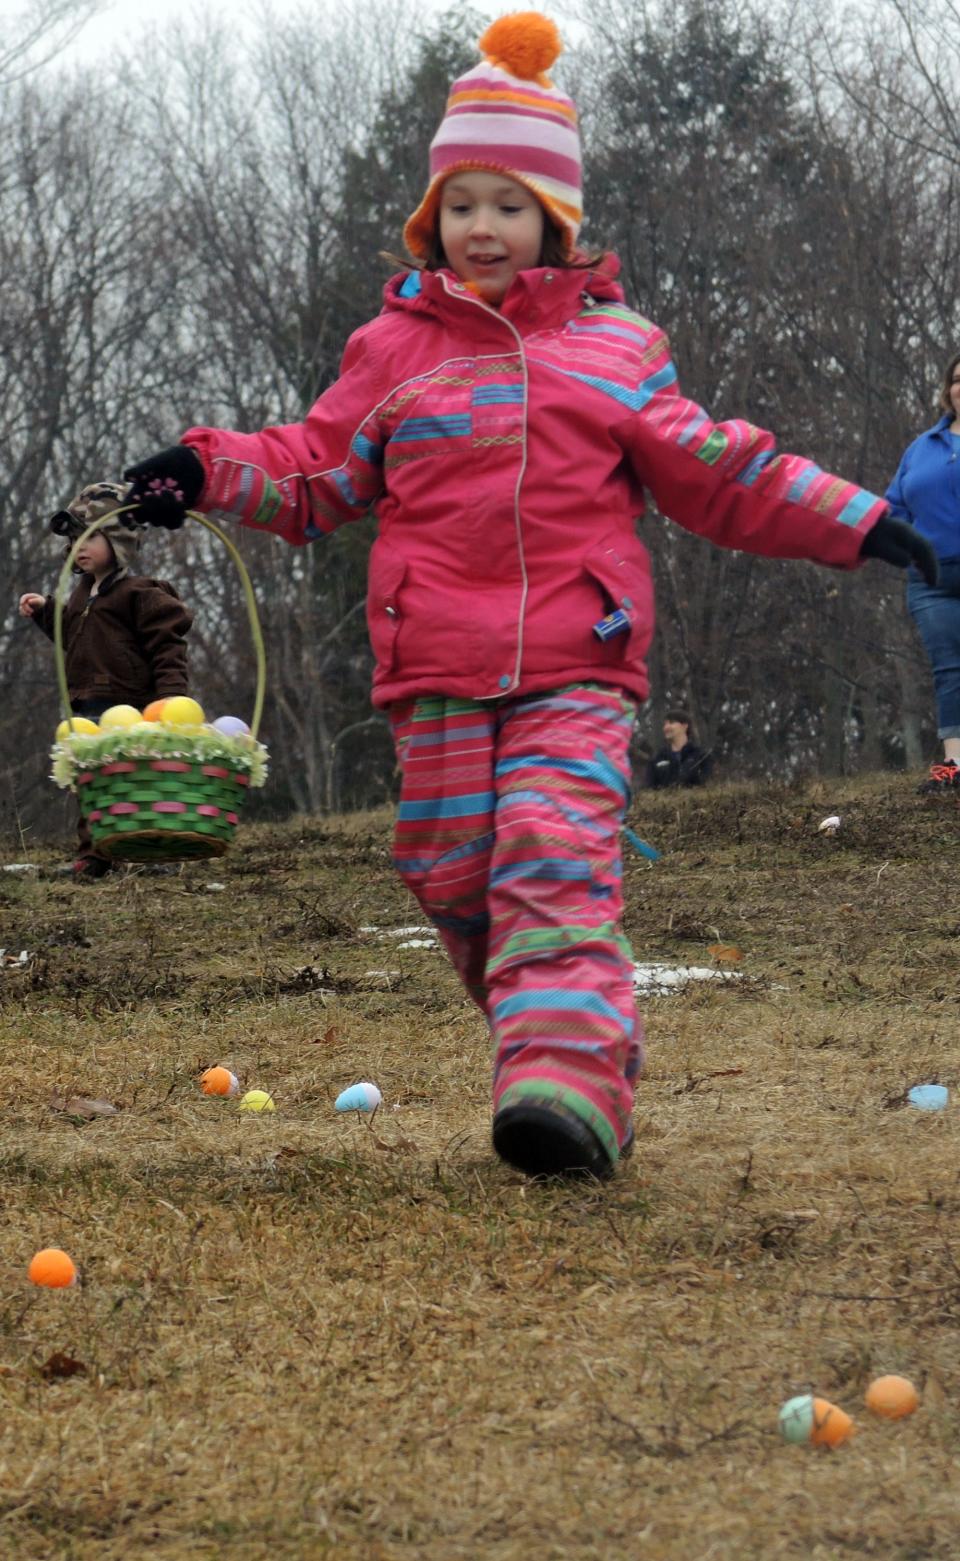 Children race for more eggs at an Easter egg hunt in Harbor Springs.